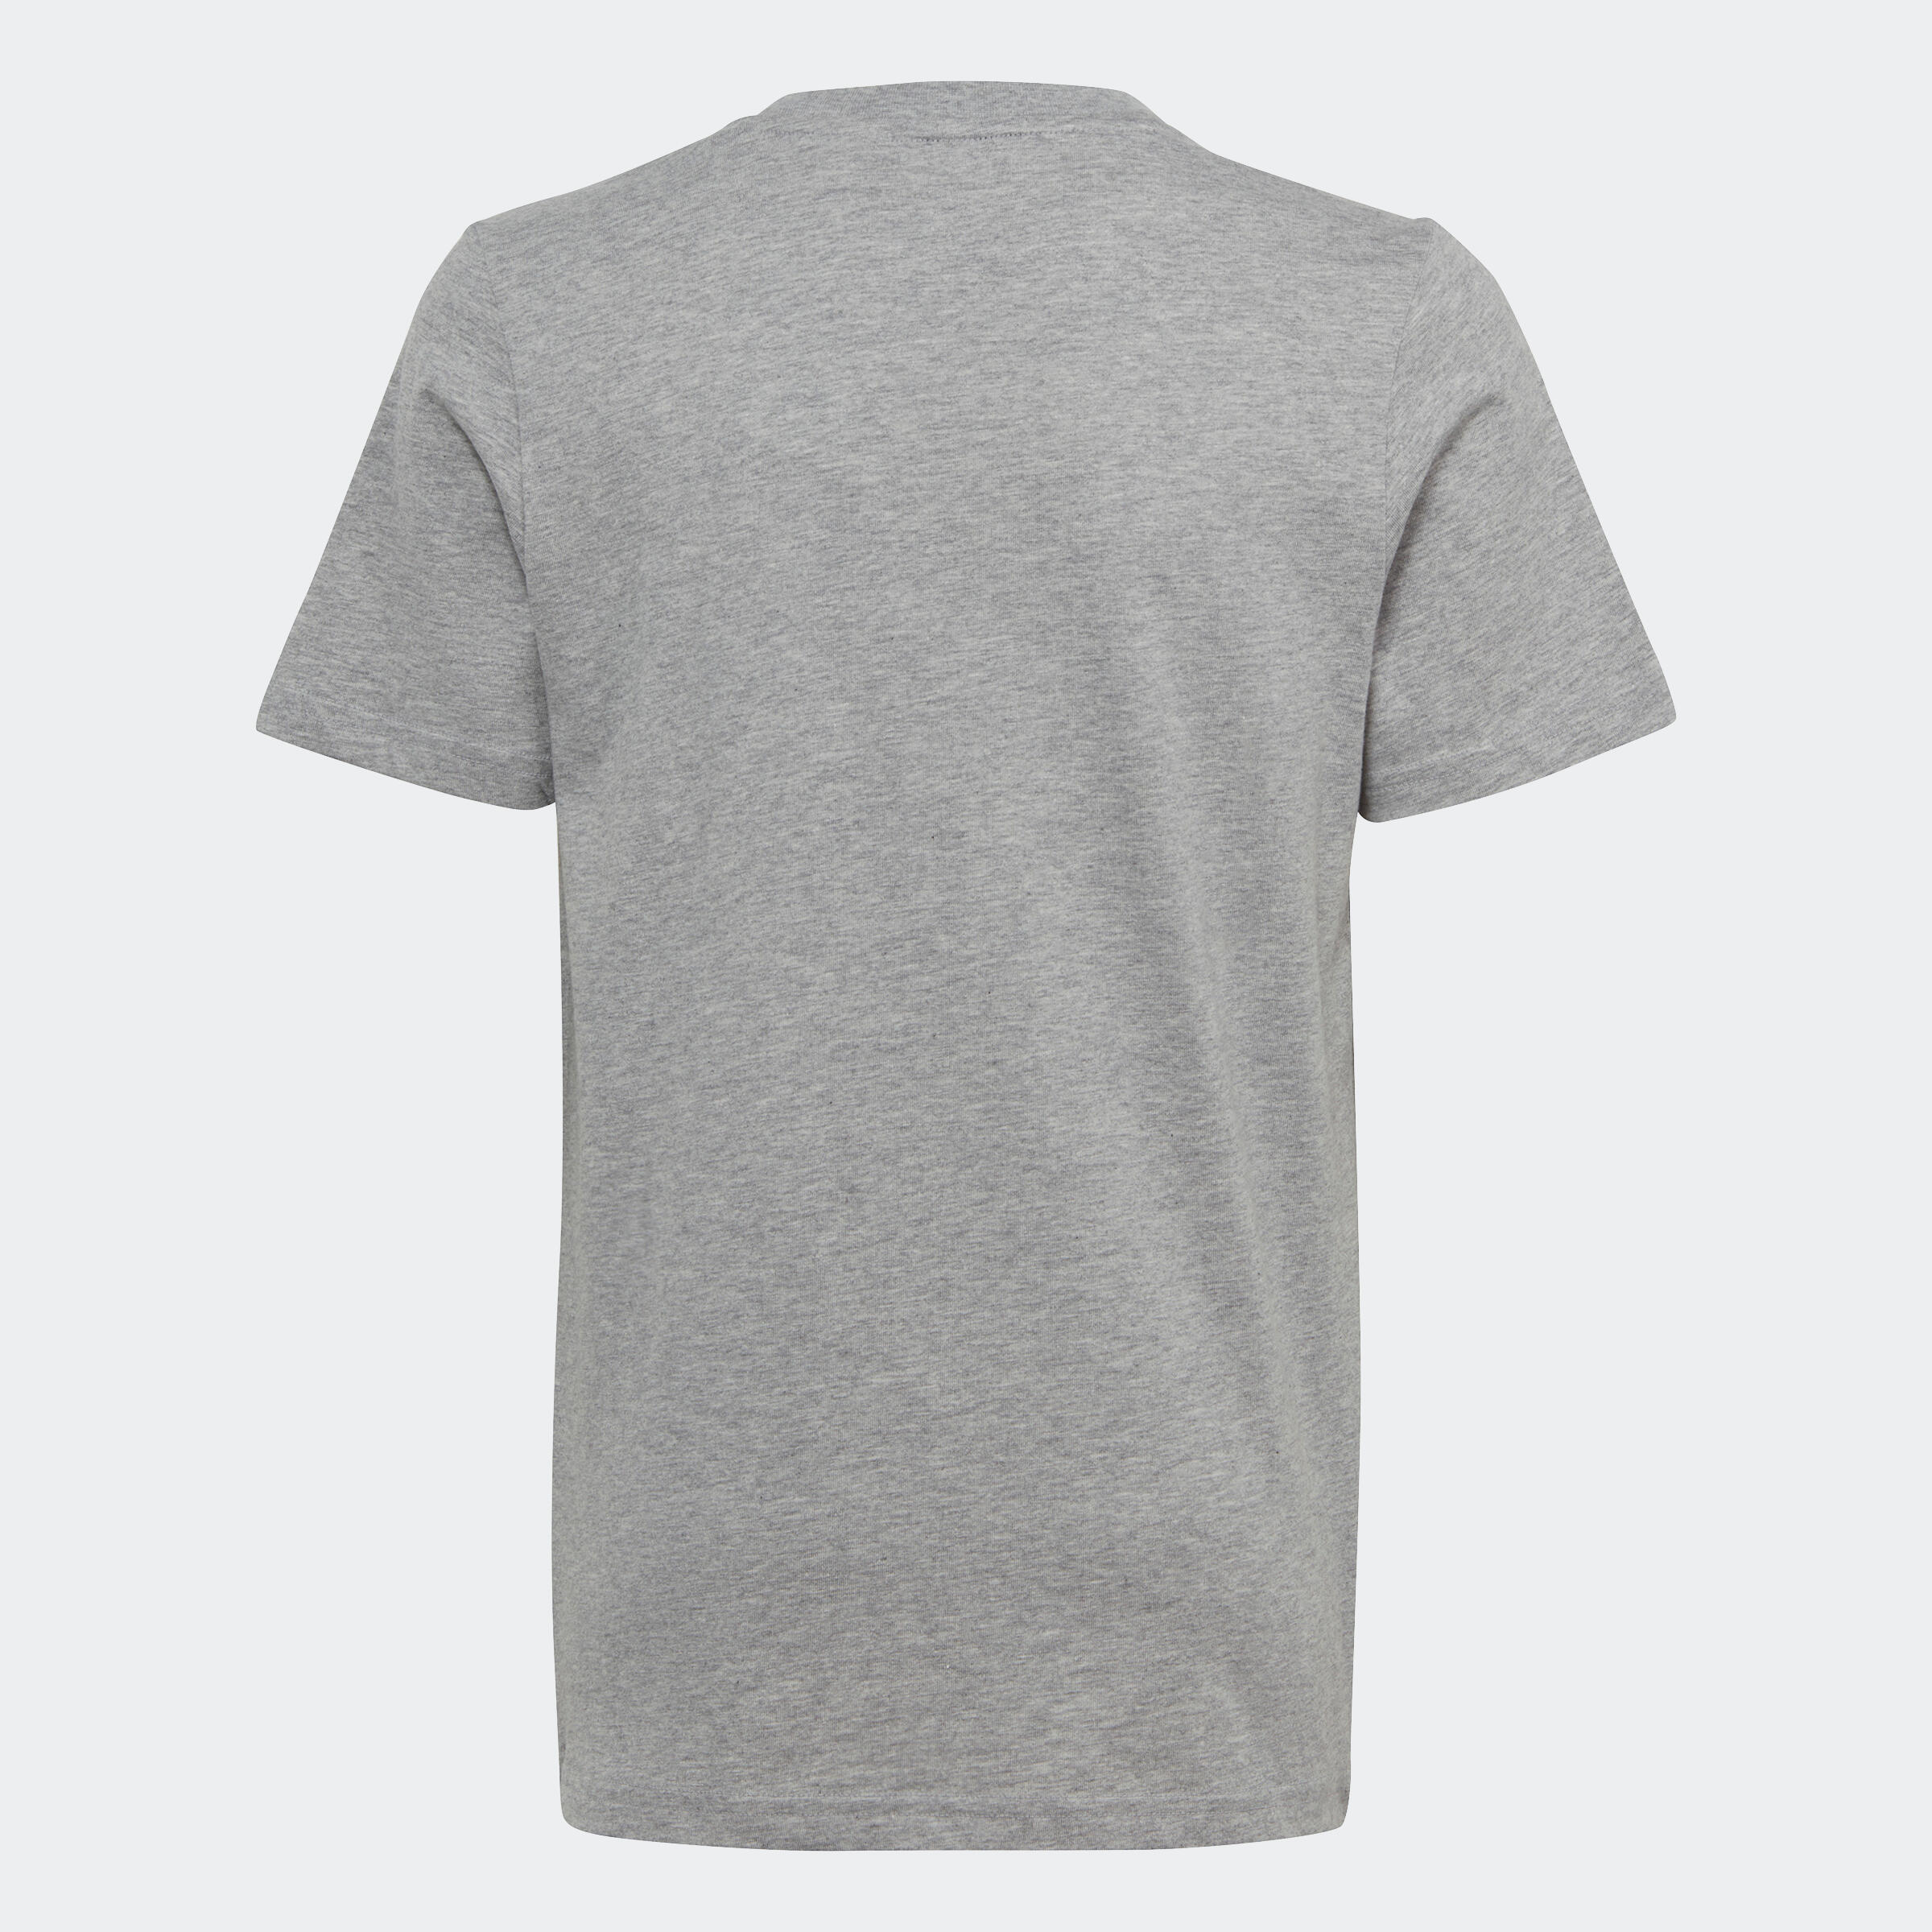 Kids' T-Shirt - Grey/White Printed Logo 2/5